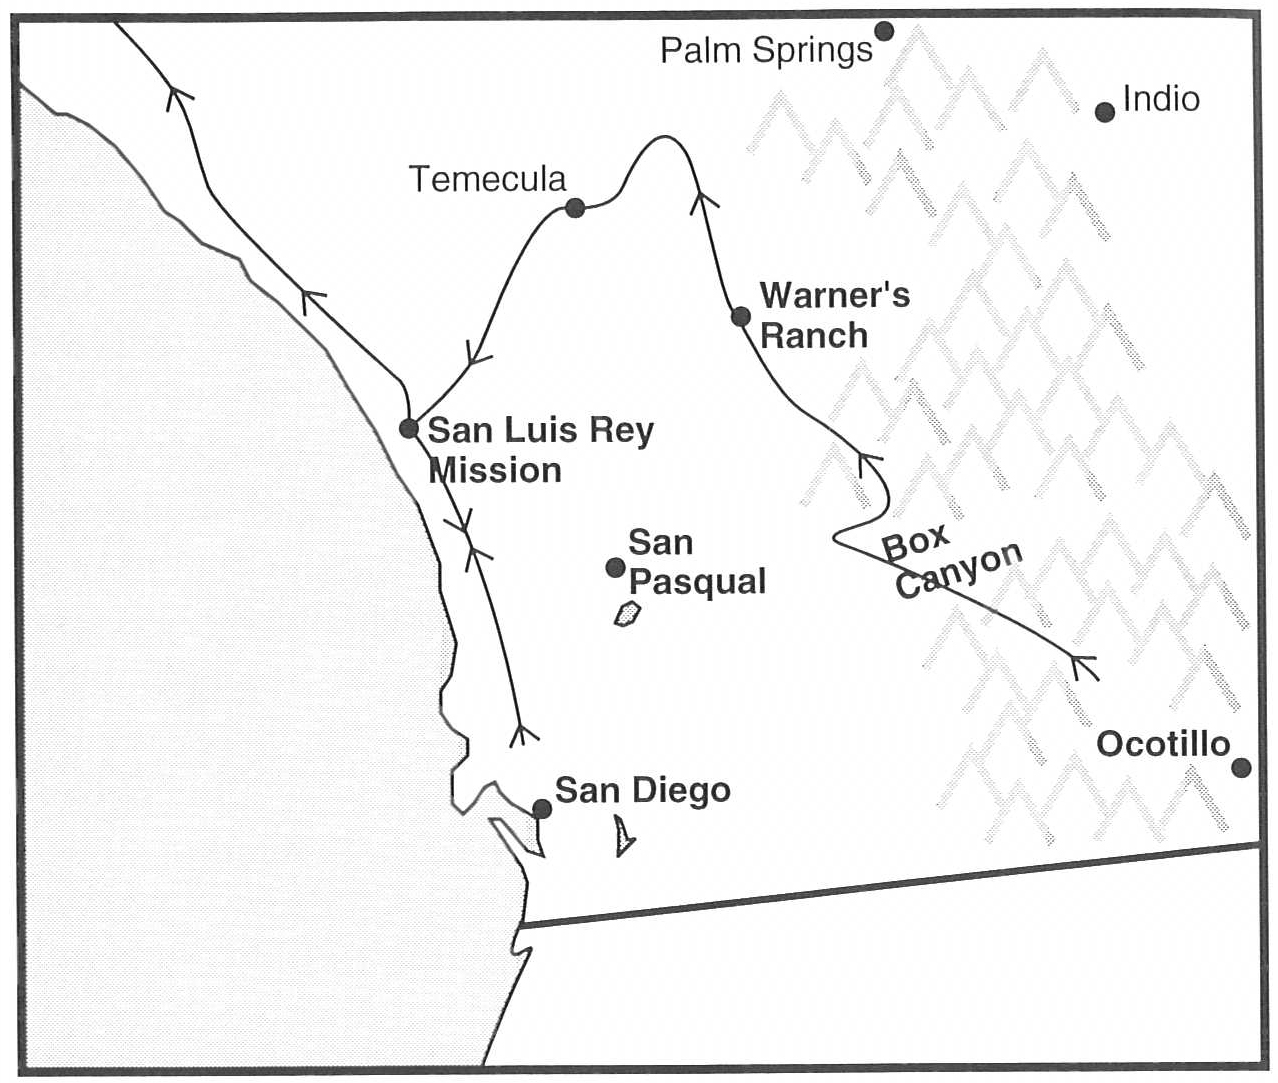 Mormon Battalion route in San Diego area